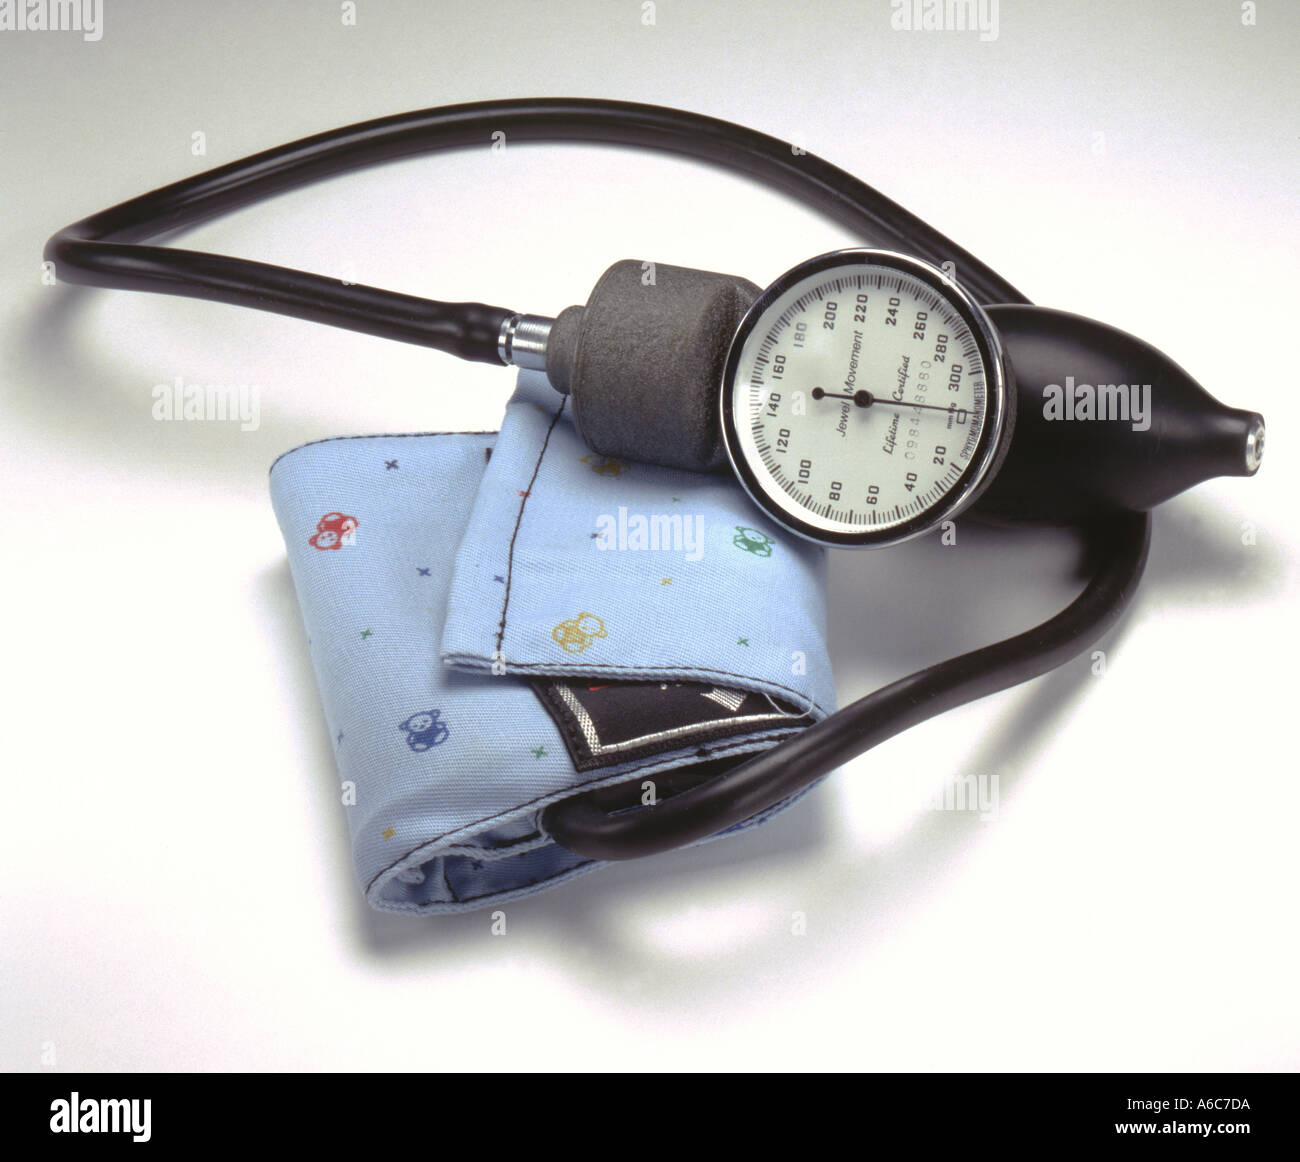 Pediatric Blood Pressure Cuff Stock Photo - Alamy